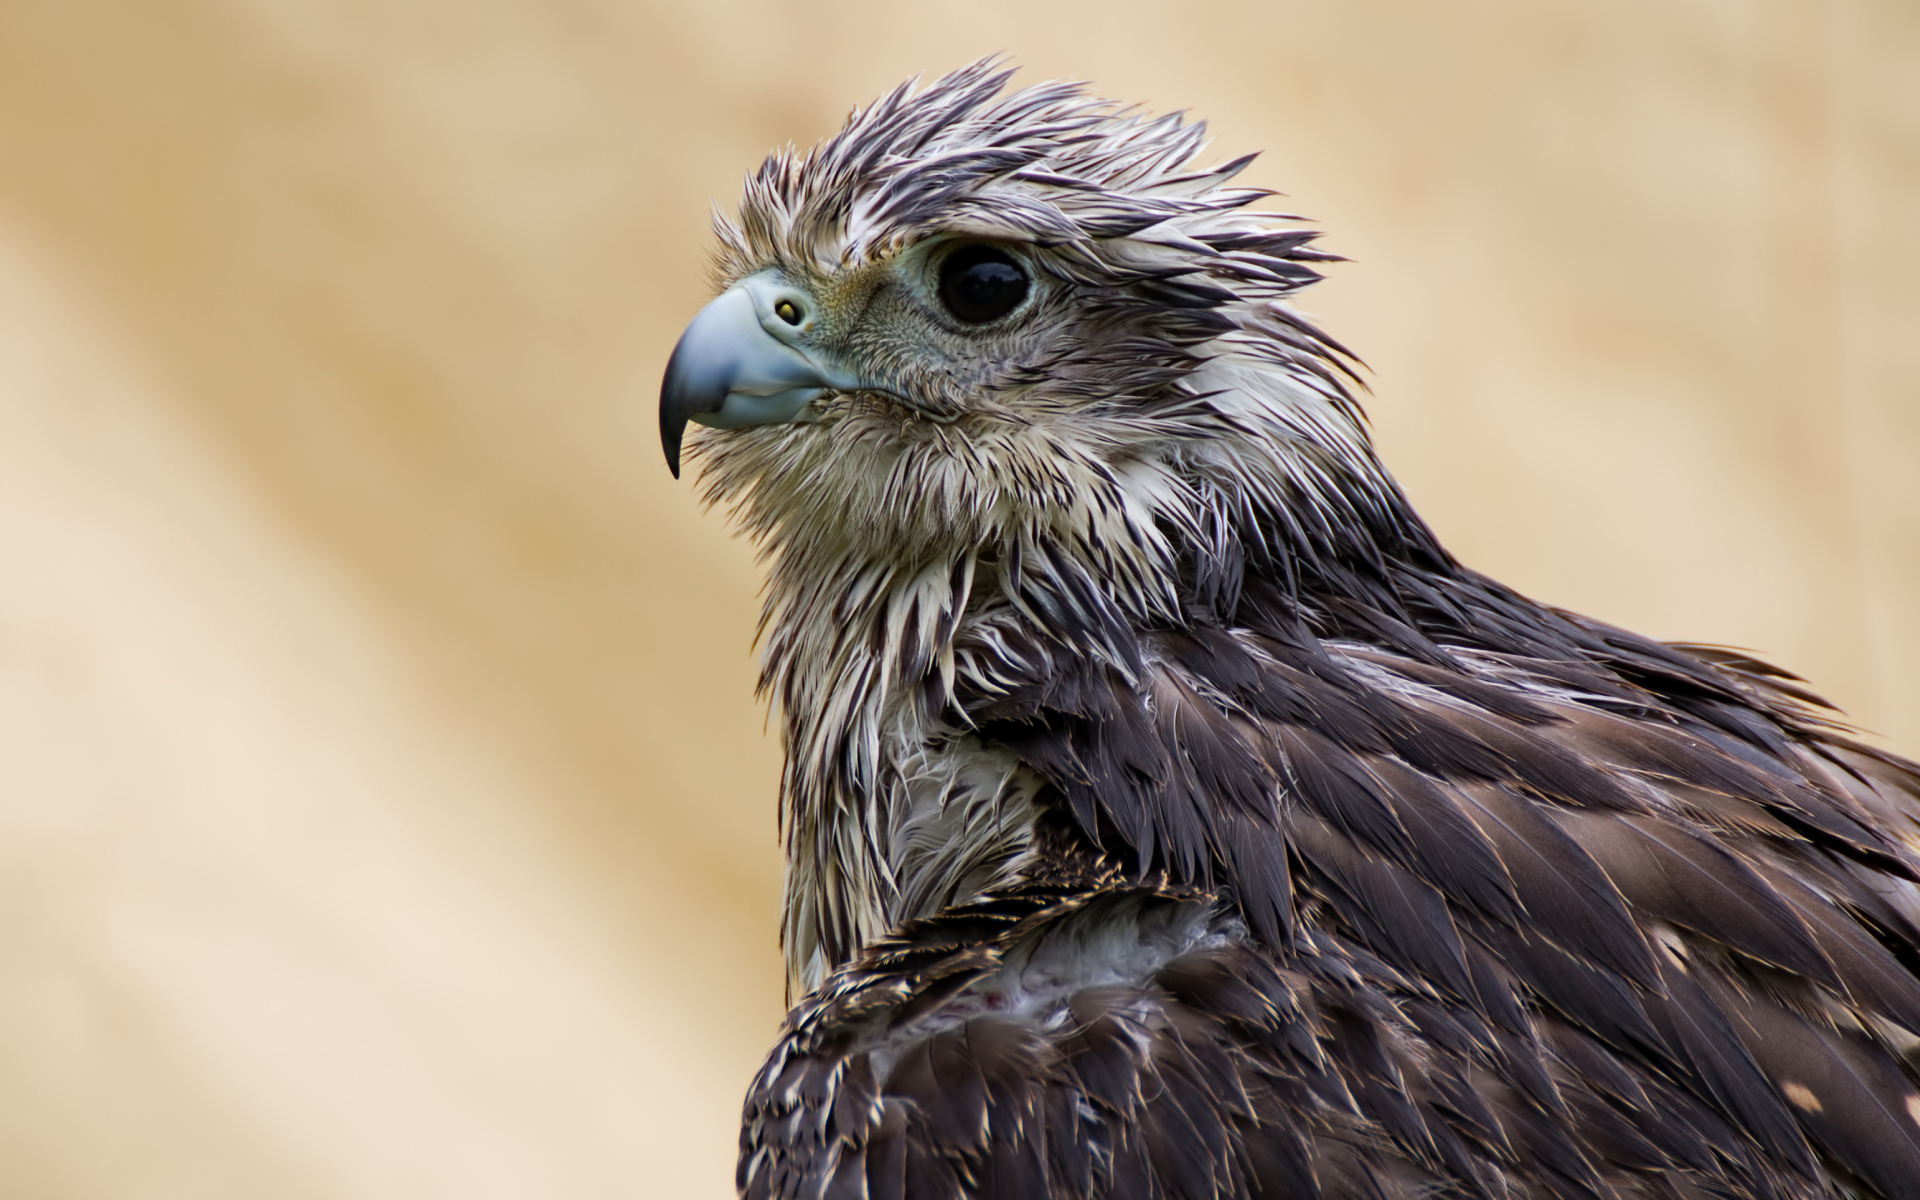 Wet Hawk with a sharp beak